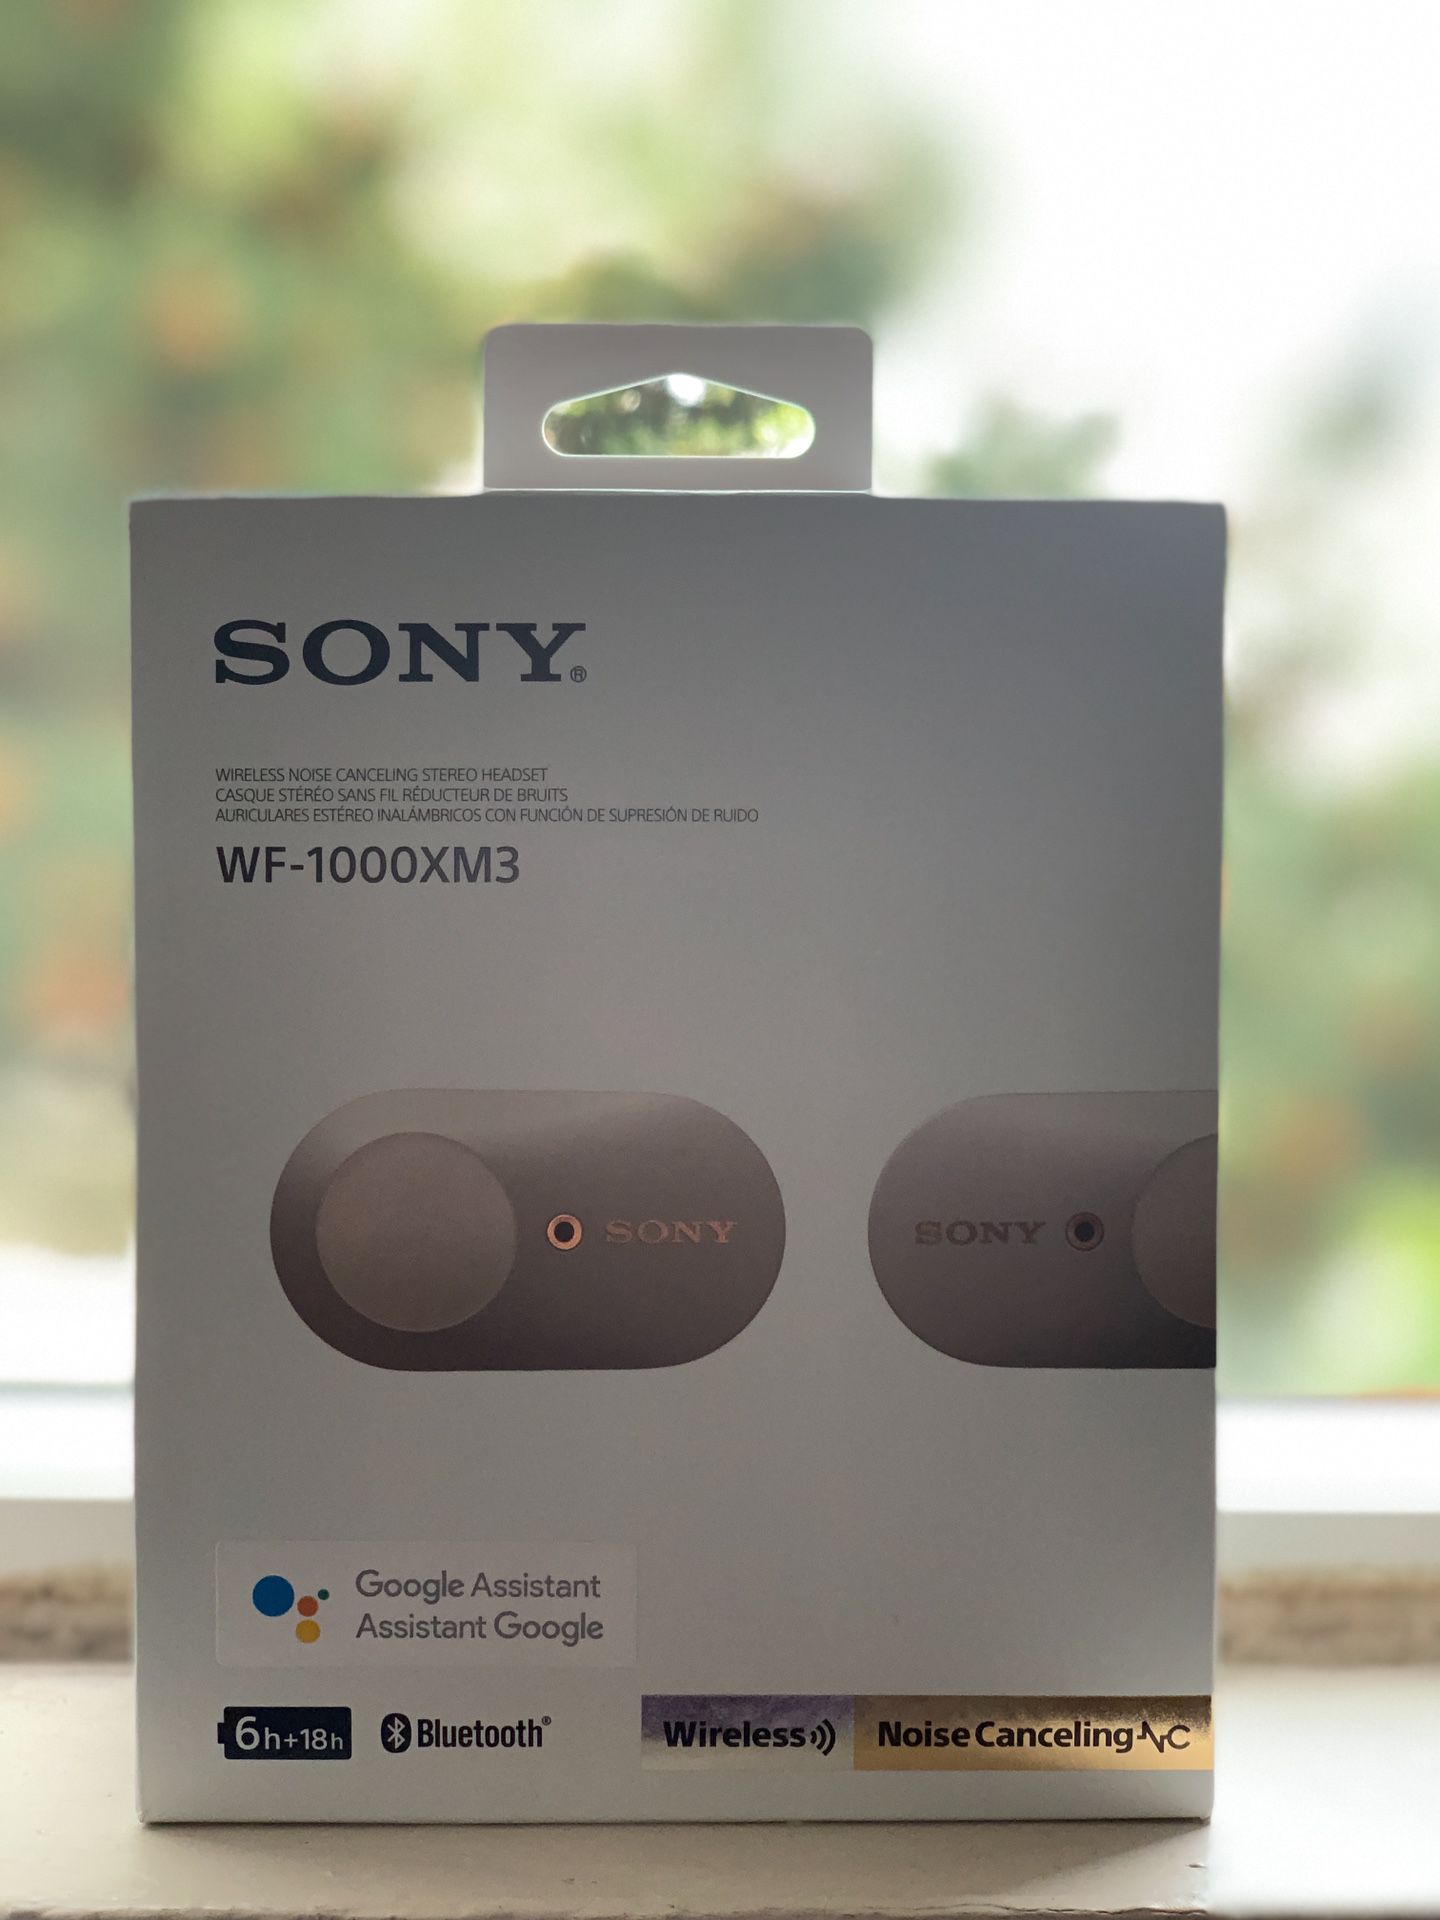 Sony WF-1000XM3 True Wireless Bluetooth Earbuds (Platinum Silver) like new